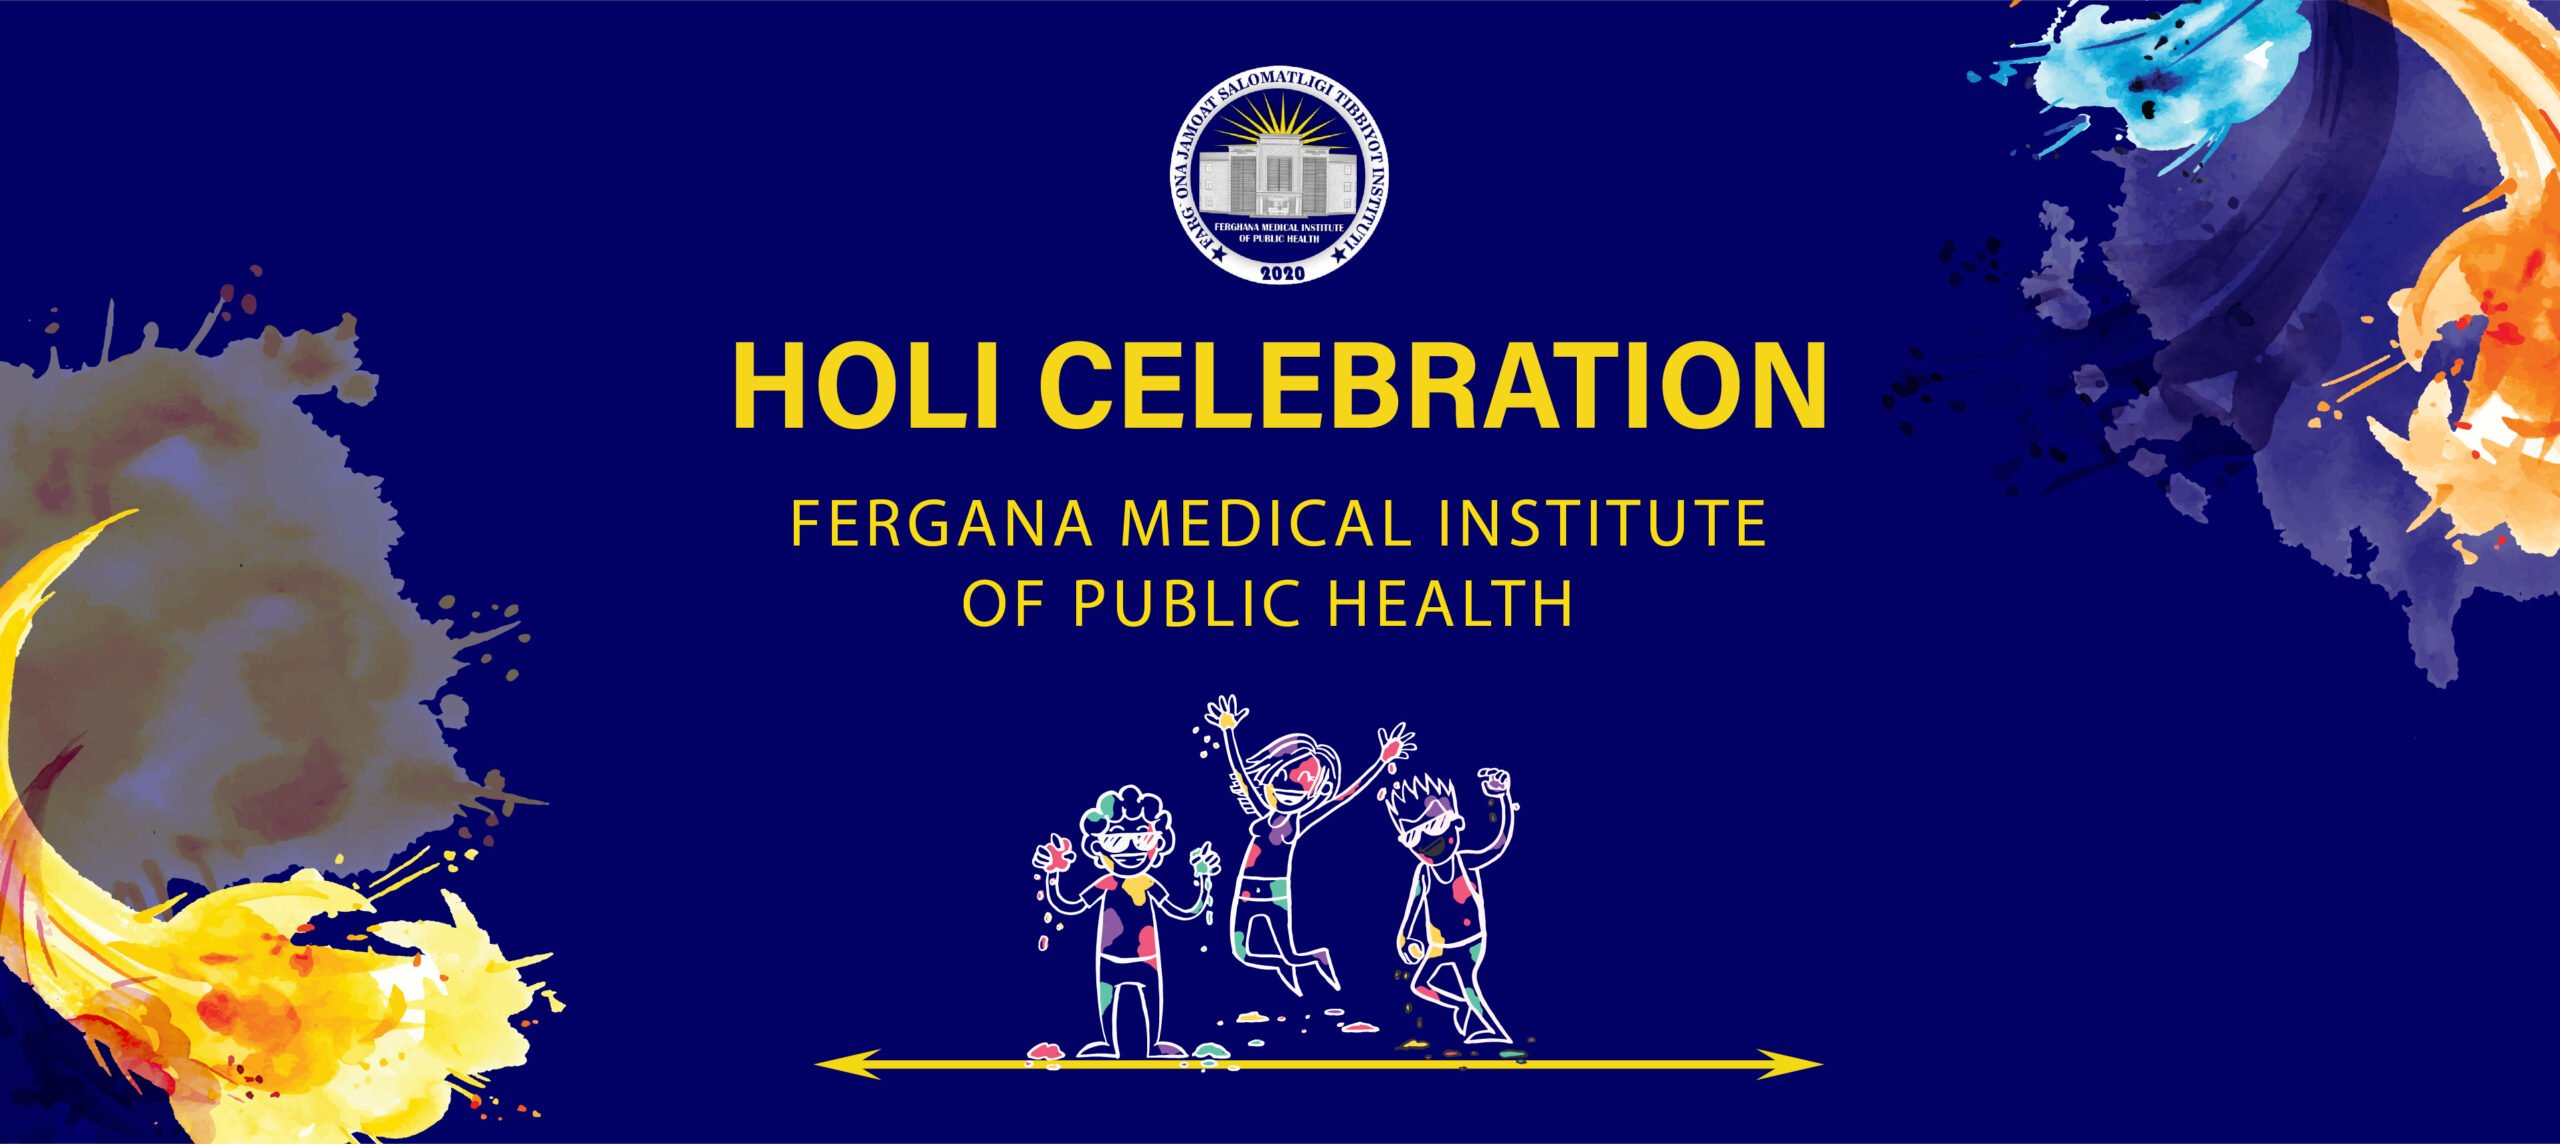 Holi Celebration at Fergana Medical Institute of Public Health, Uzbekistan